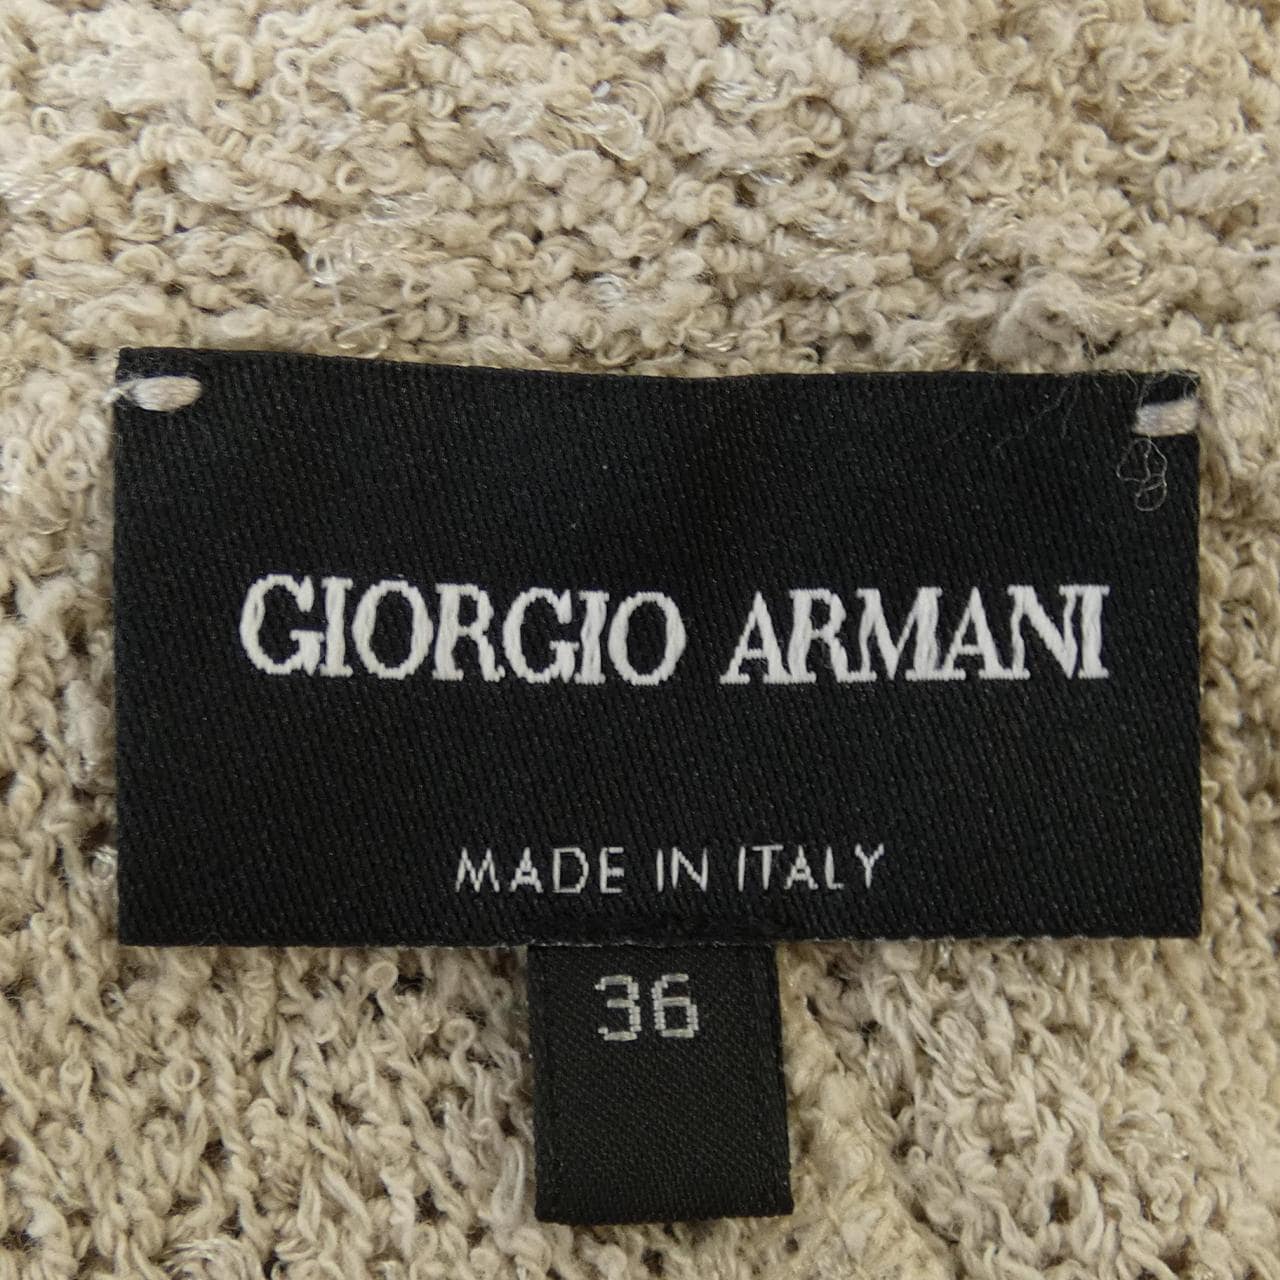 Giorgio Armani GIORGIO ARMANI cardigan